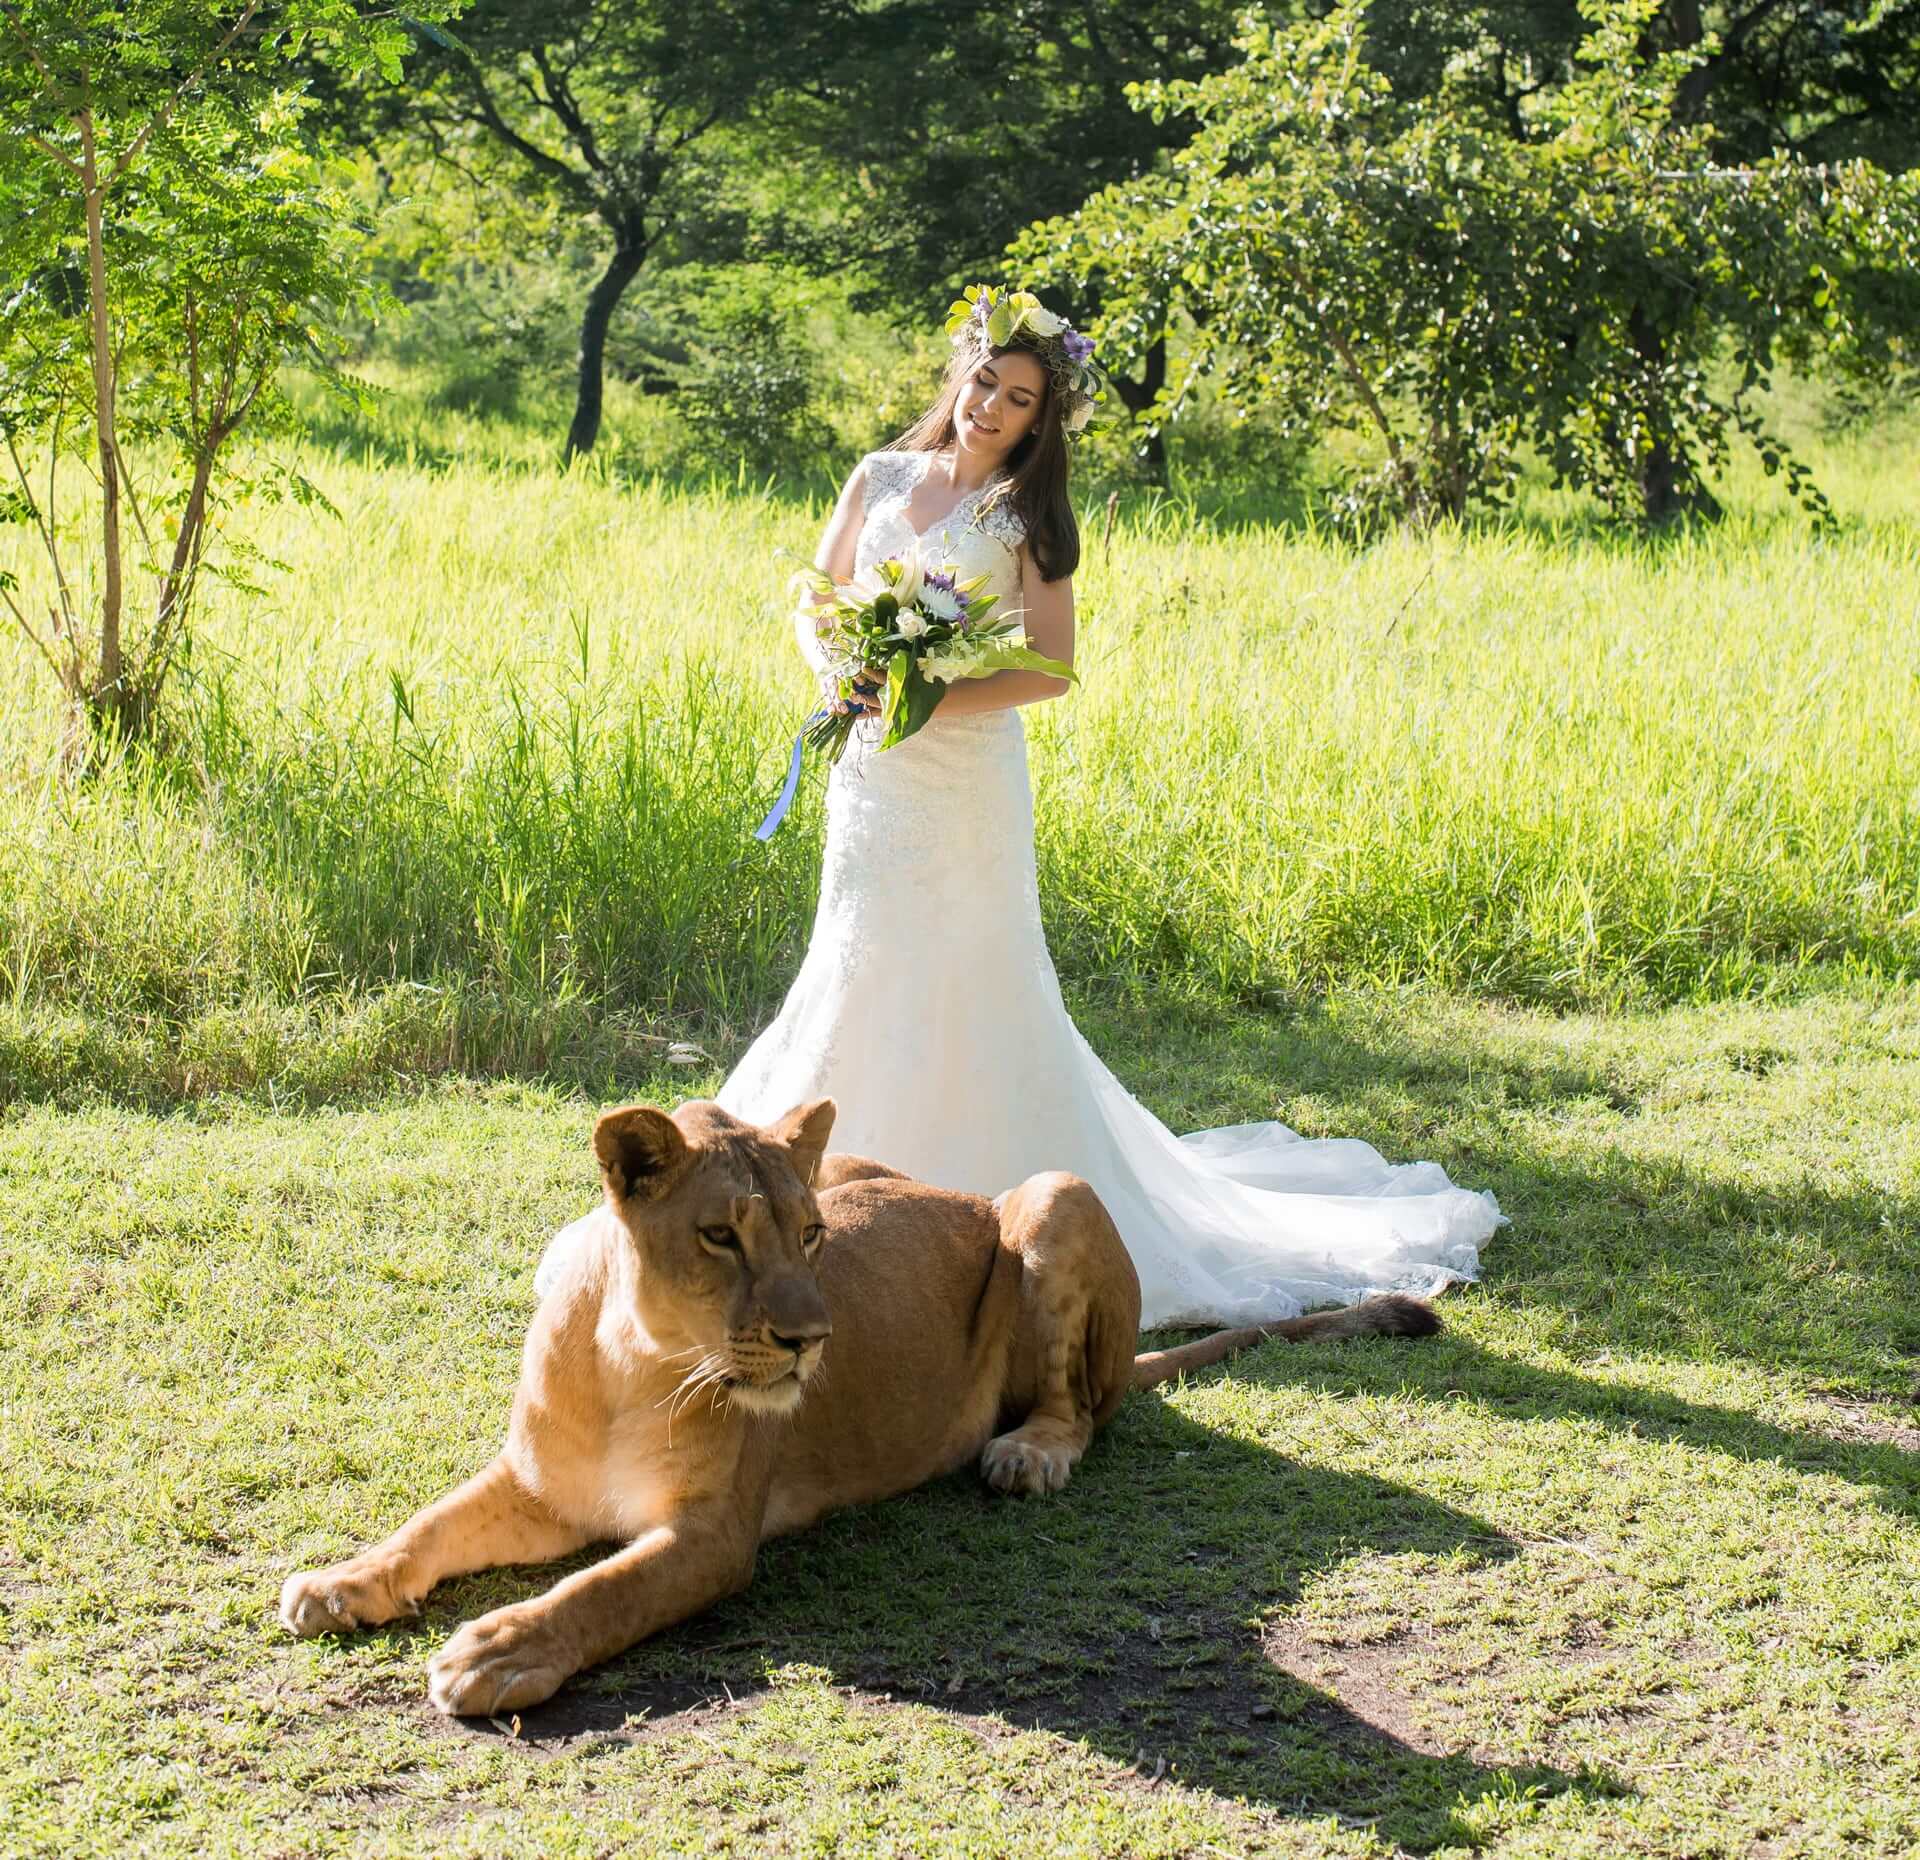 Il matrimonio dei tuoi sogni in stile Safari